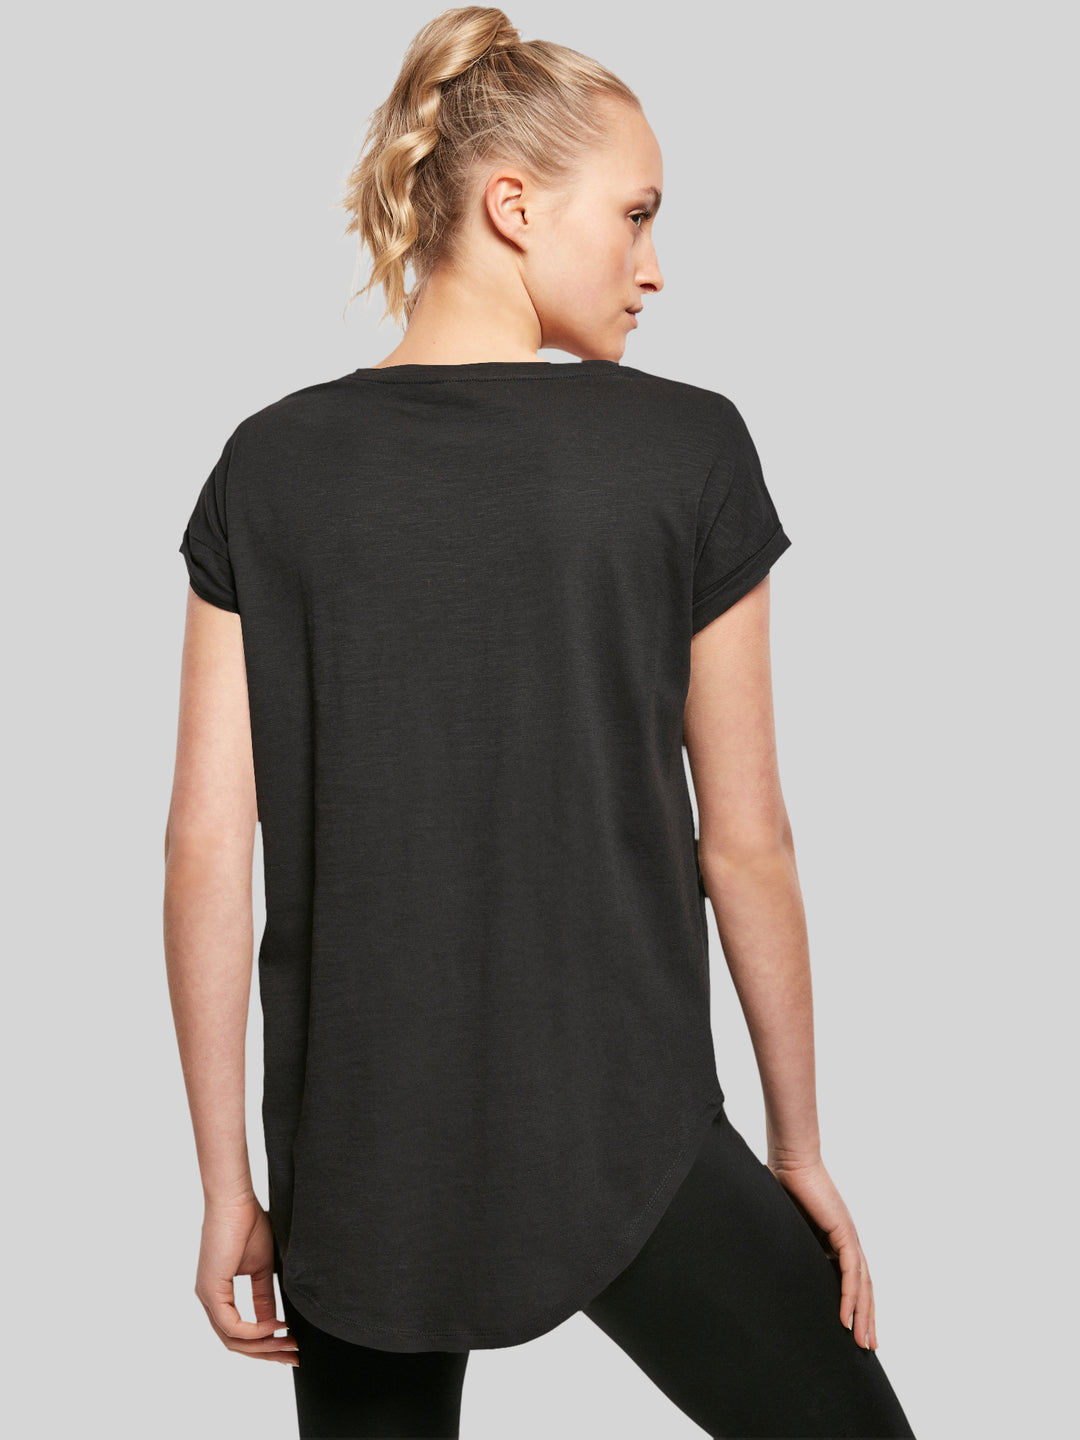 ACDC Rückseite in Schwarz mit langem Slub-Damen-T-Shirt